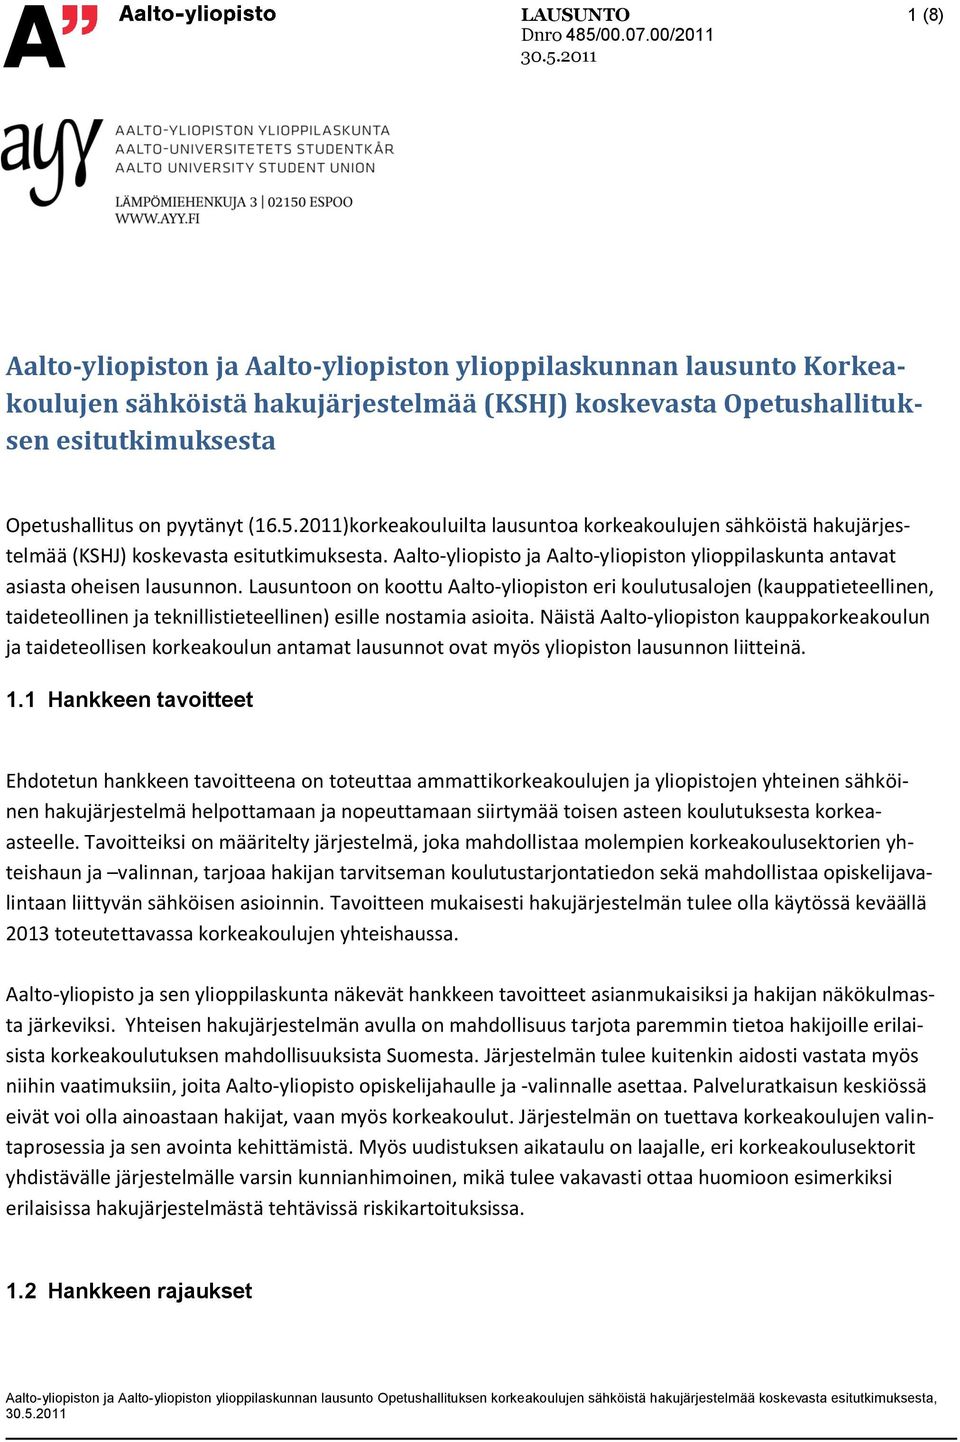 Lausuntoon on koottu Aalto-yliopiston eri koulutusalojen (kauppatieteellinen, taideteollinen ja teknillistieteellinen) esille nostamia asioita.